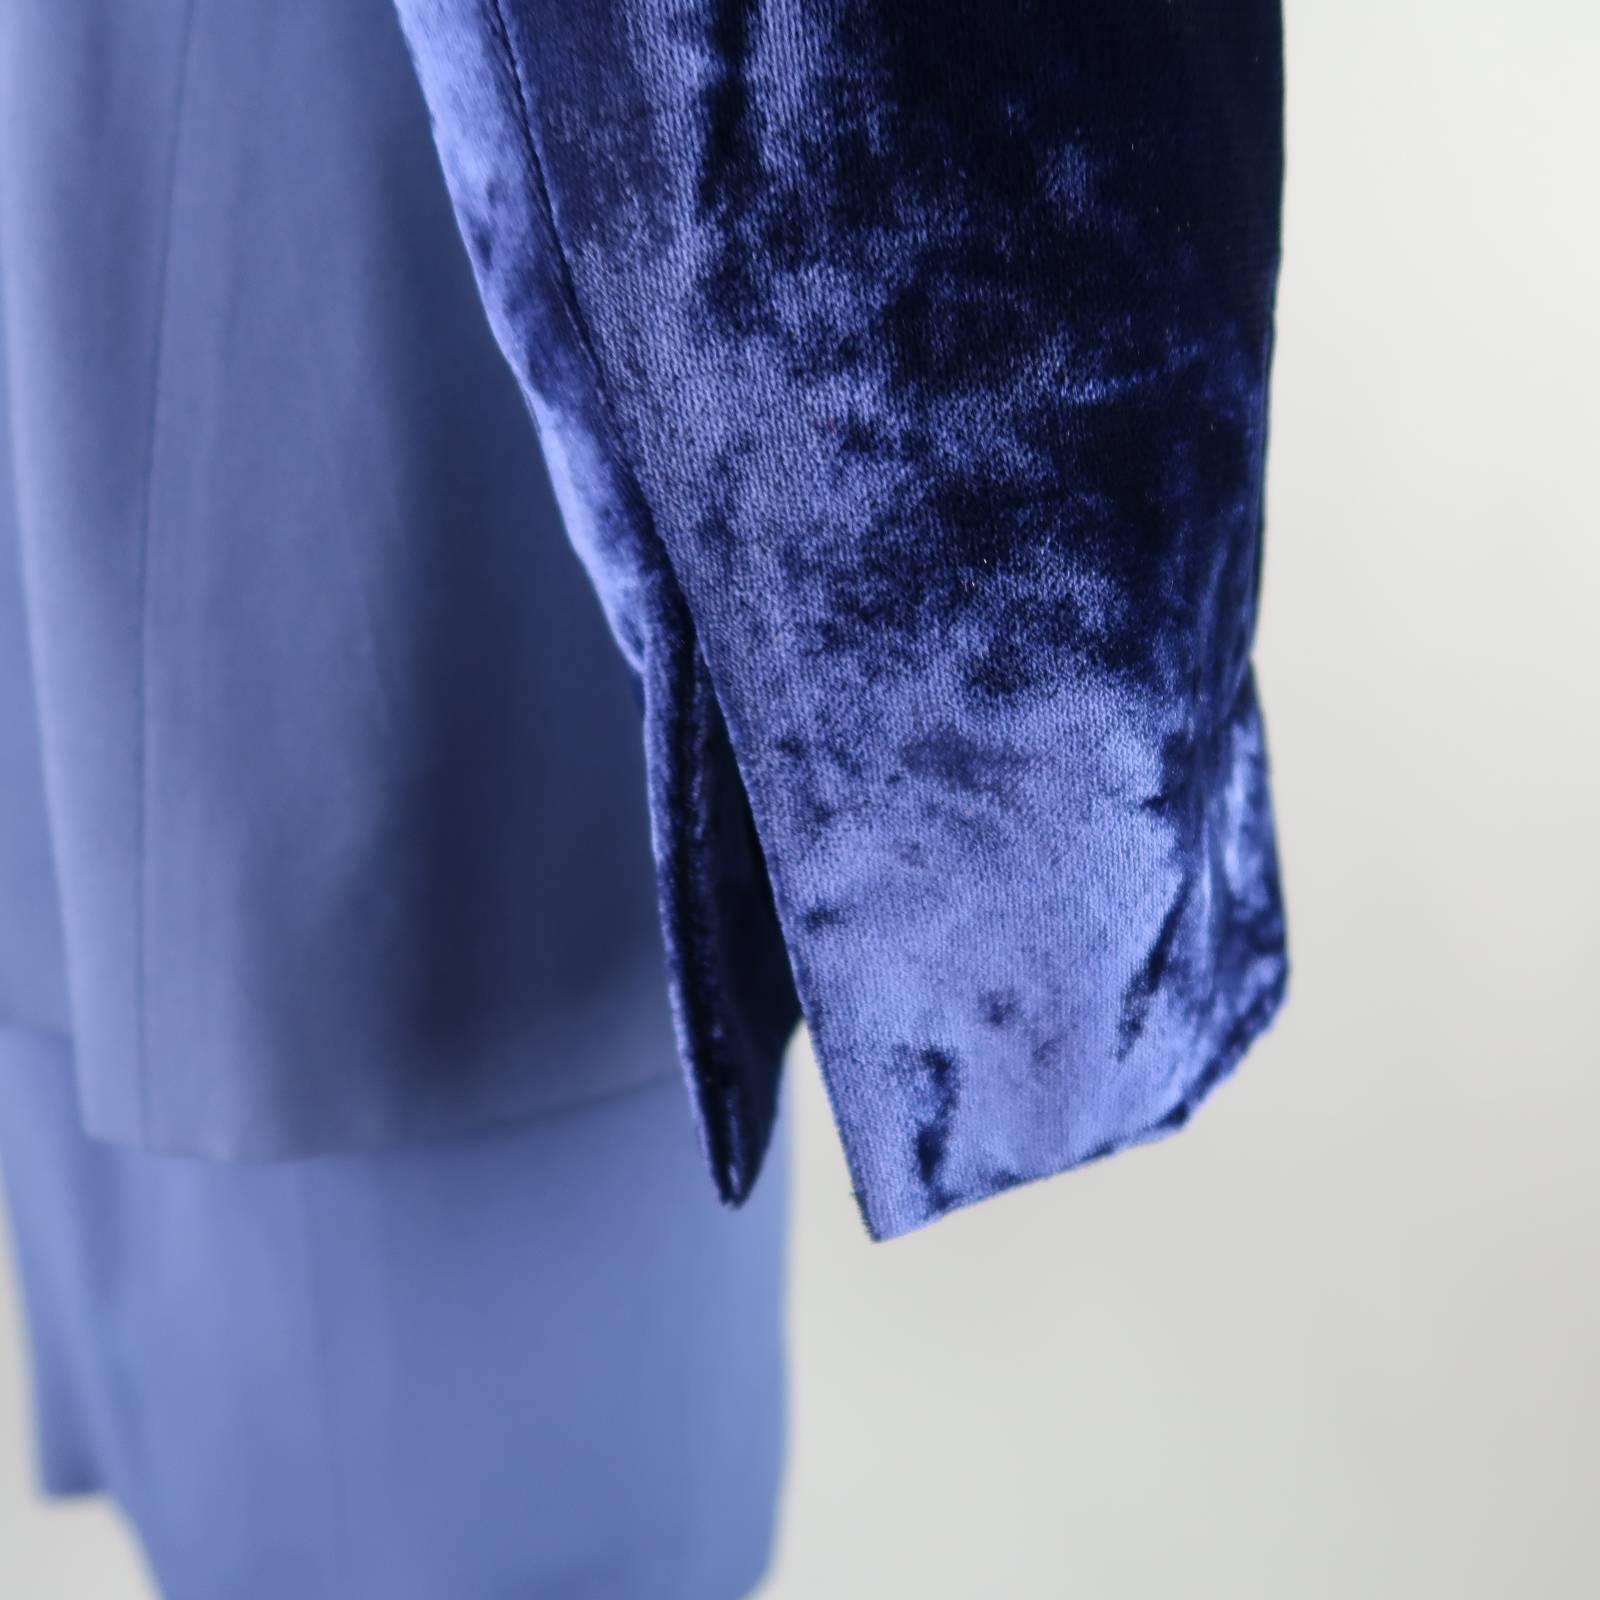 GIANFRANCO FERRE Size 8 Blue Velvet Panel Skirt Suit 2